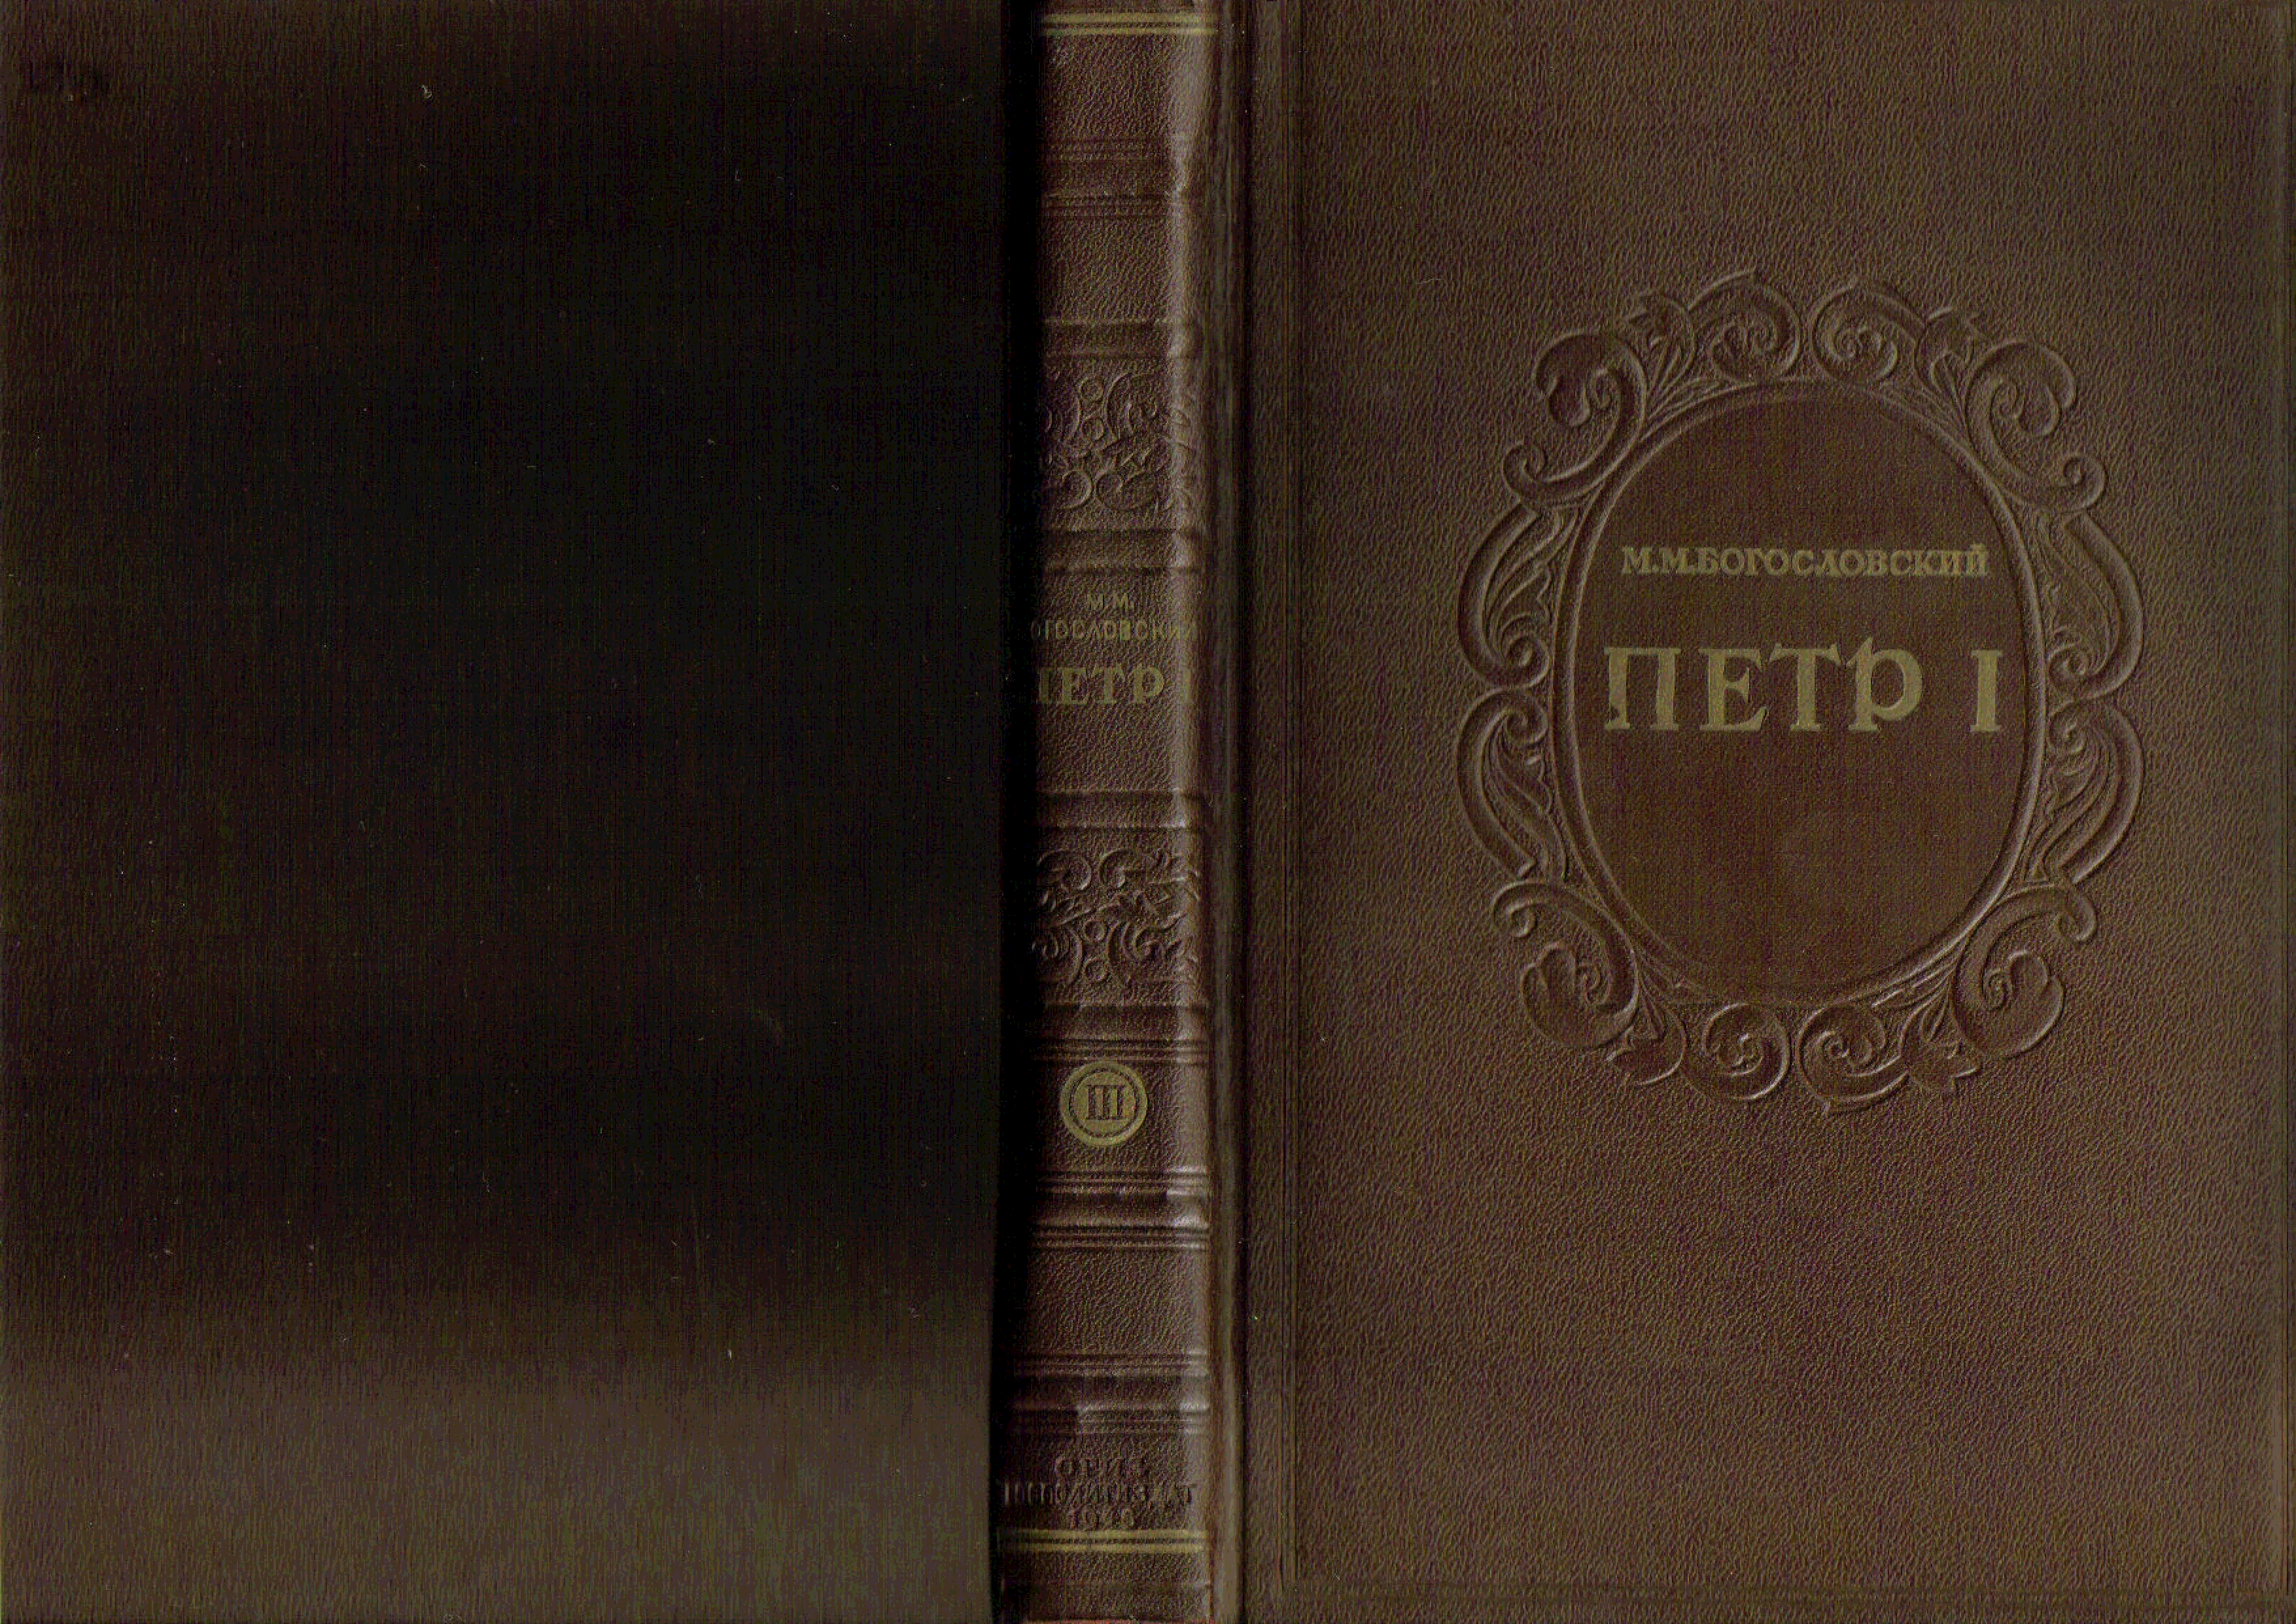 Составитель примечаний. Обложка биография. Книги 1946 года. Коллекция книг Петра 1.